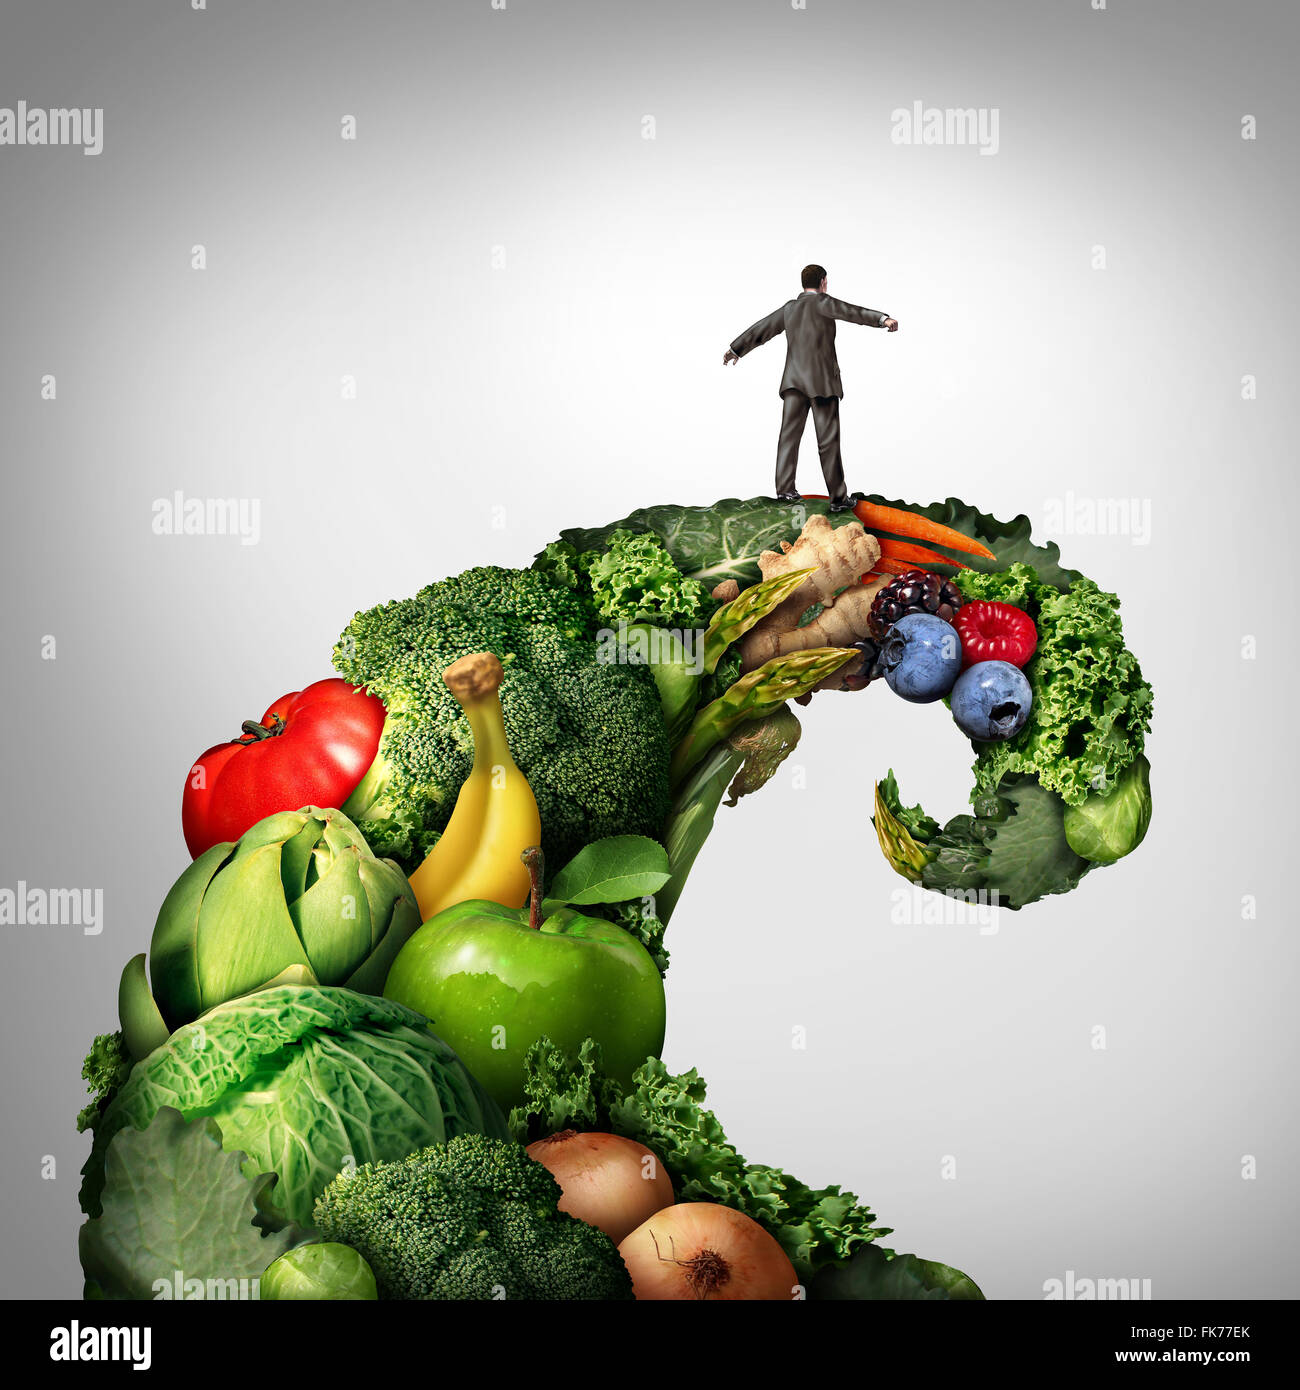 Gesundes Leben-Bewegung als eine Person auf eine Gruppe von Gemüse und Obst in Form einer Welle oder einer Flut, einen natürliche organische vegetarische Diät Trend darstellt. Stockfoto